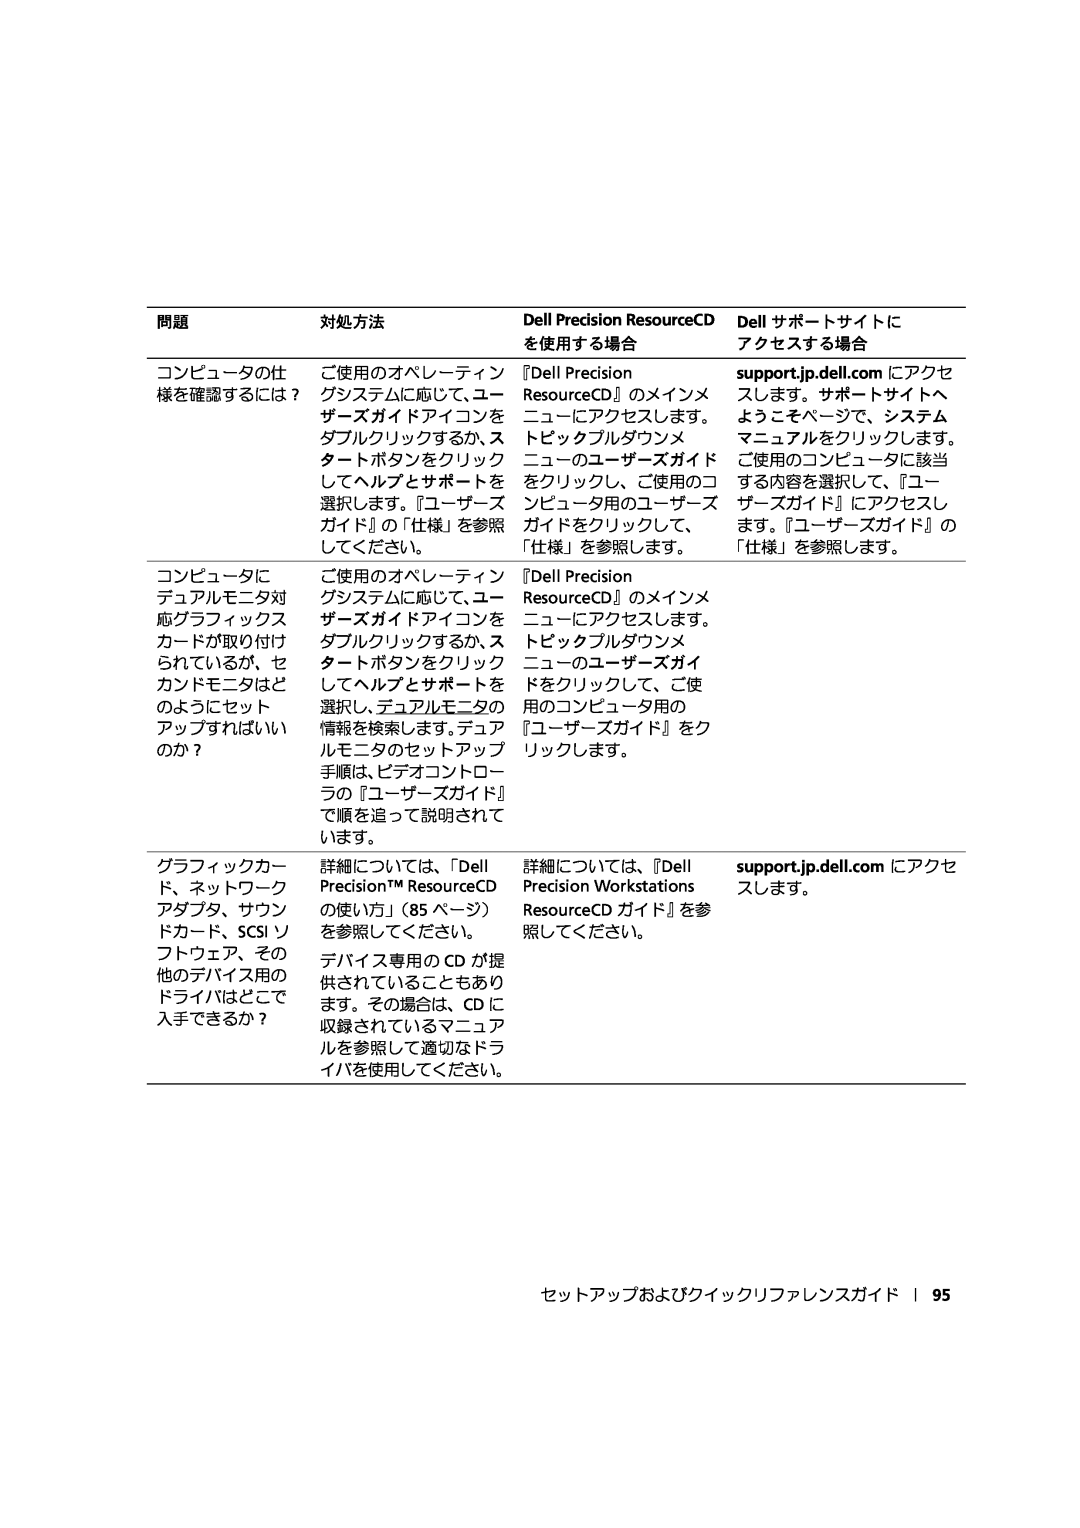 Dell 533CX manual ご使用のオペレーティン 『Dell Precision, support.jp.dell.com にアクセ, ResourceCD』のメインメ, Precision ResourceCD 